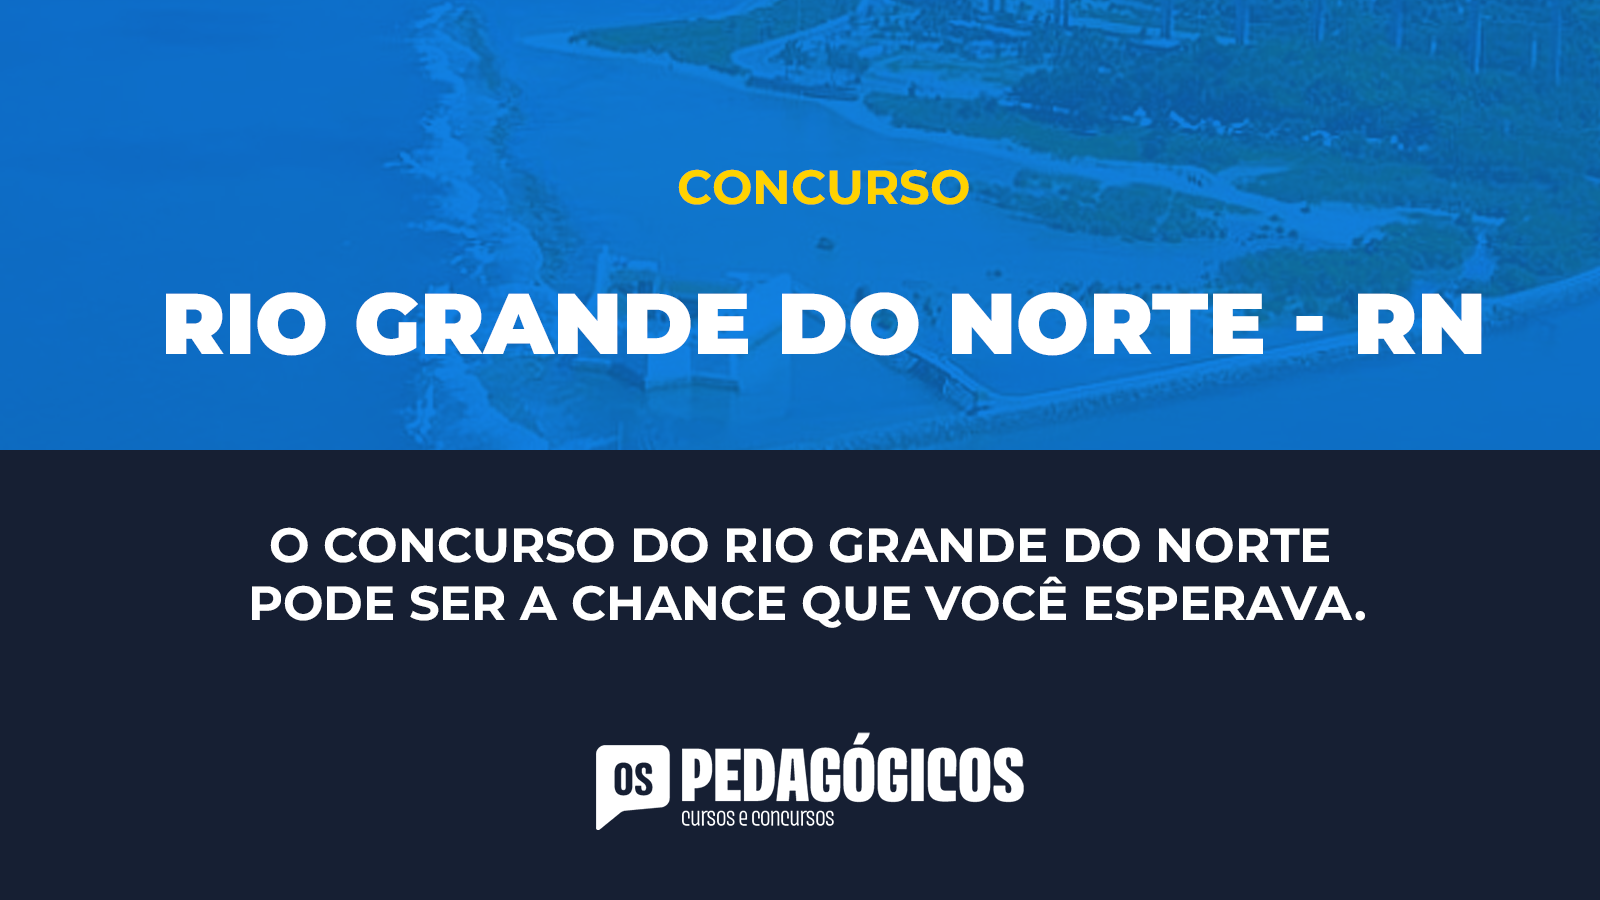 CONCURSO RIO GRANDE DO NORTE - RN